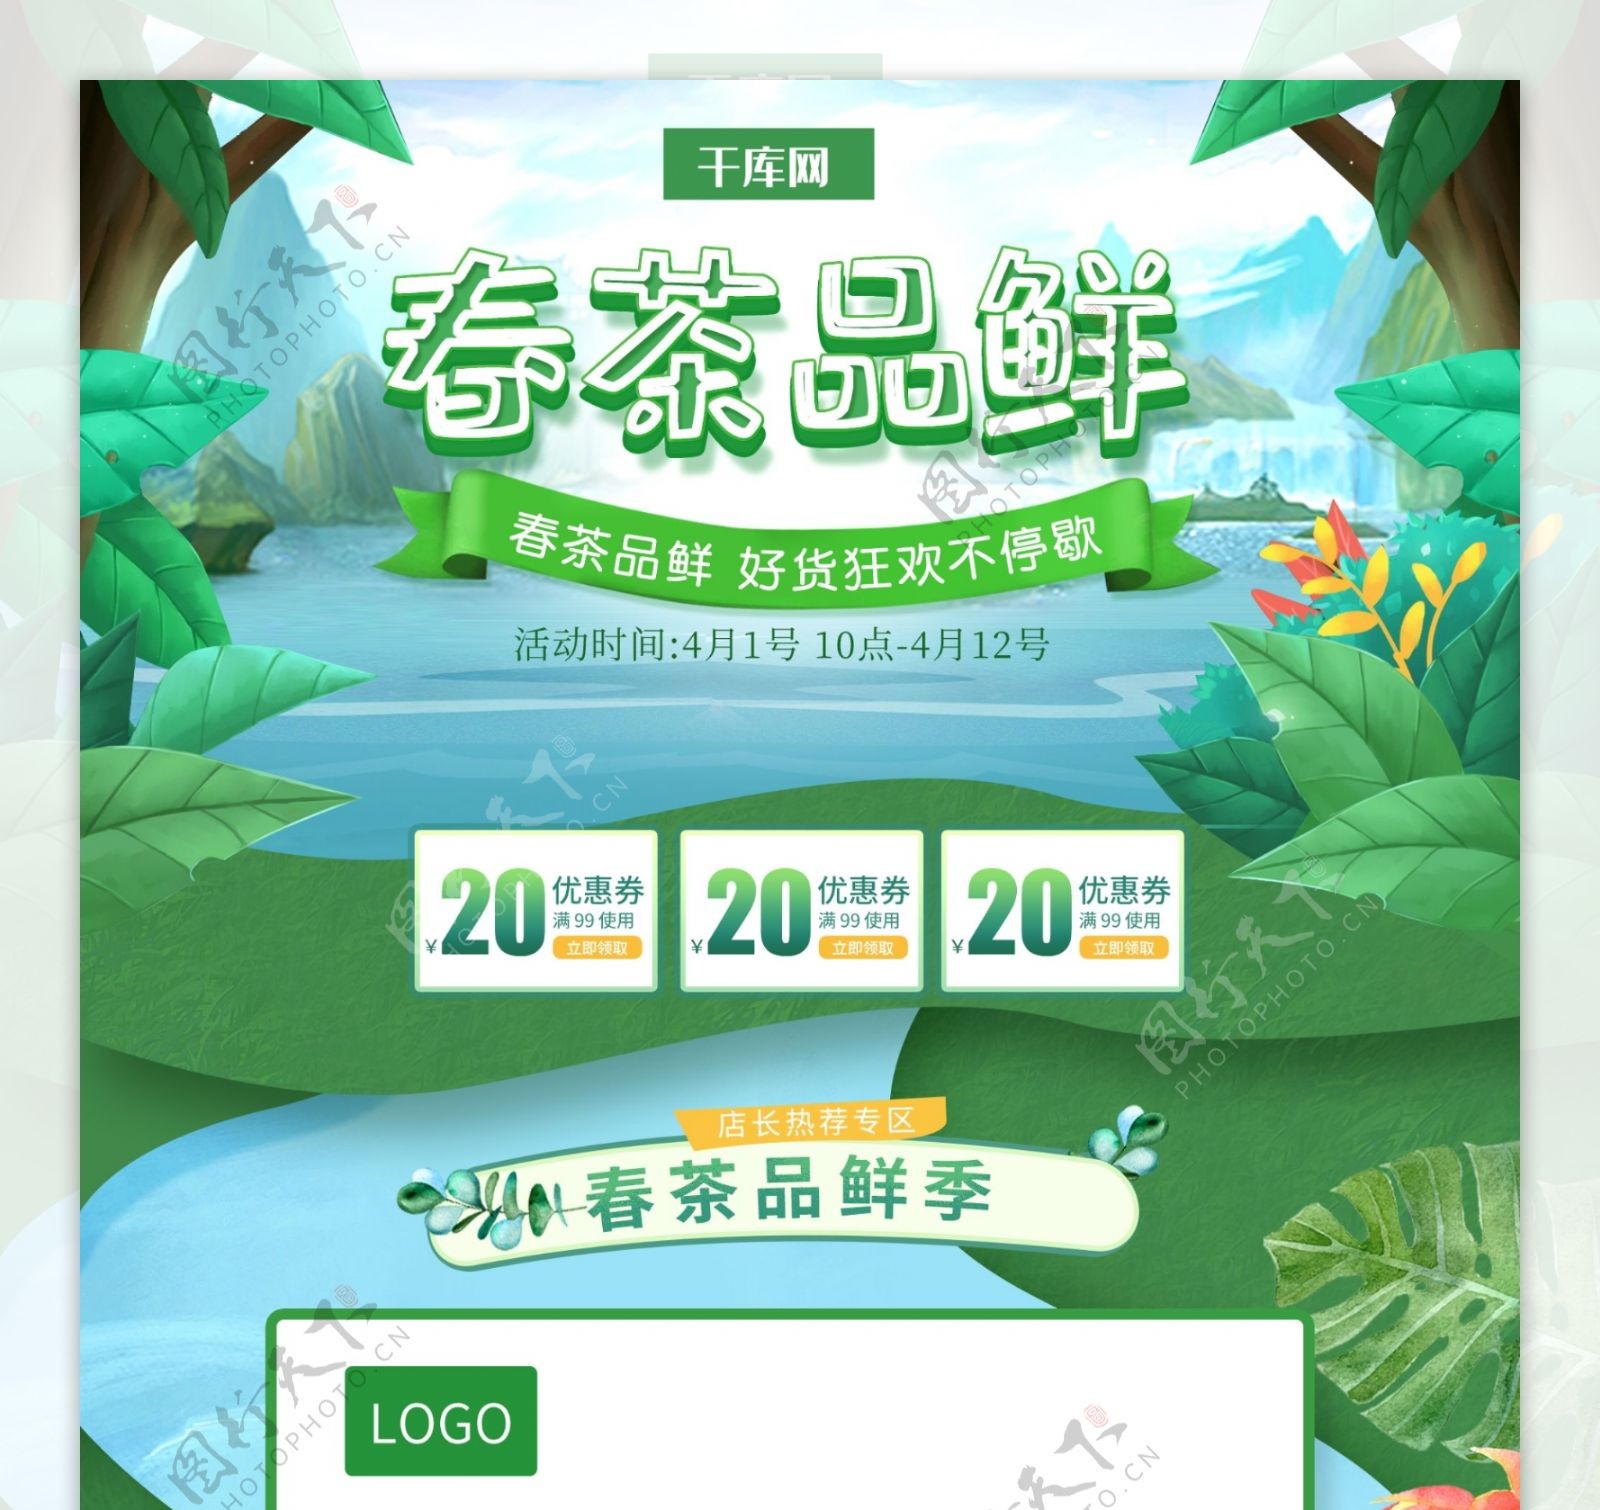 绿色小清新电商促销春季茶叶首页模板